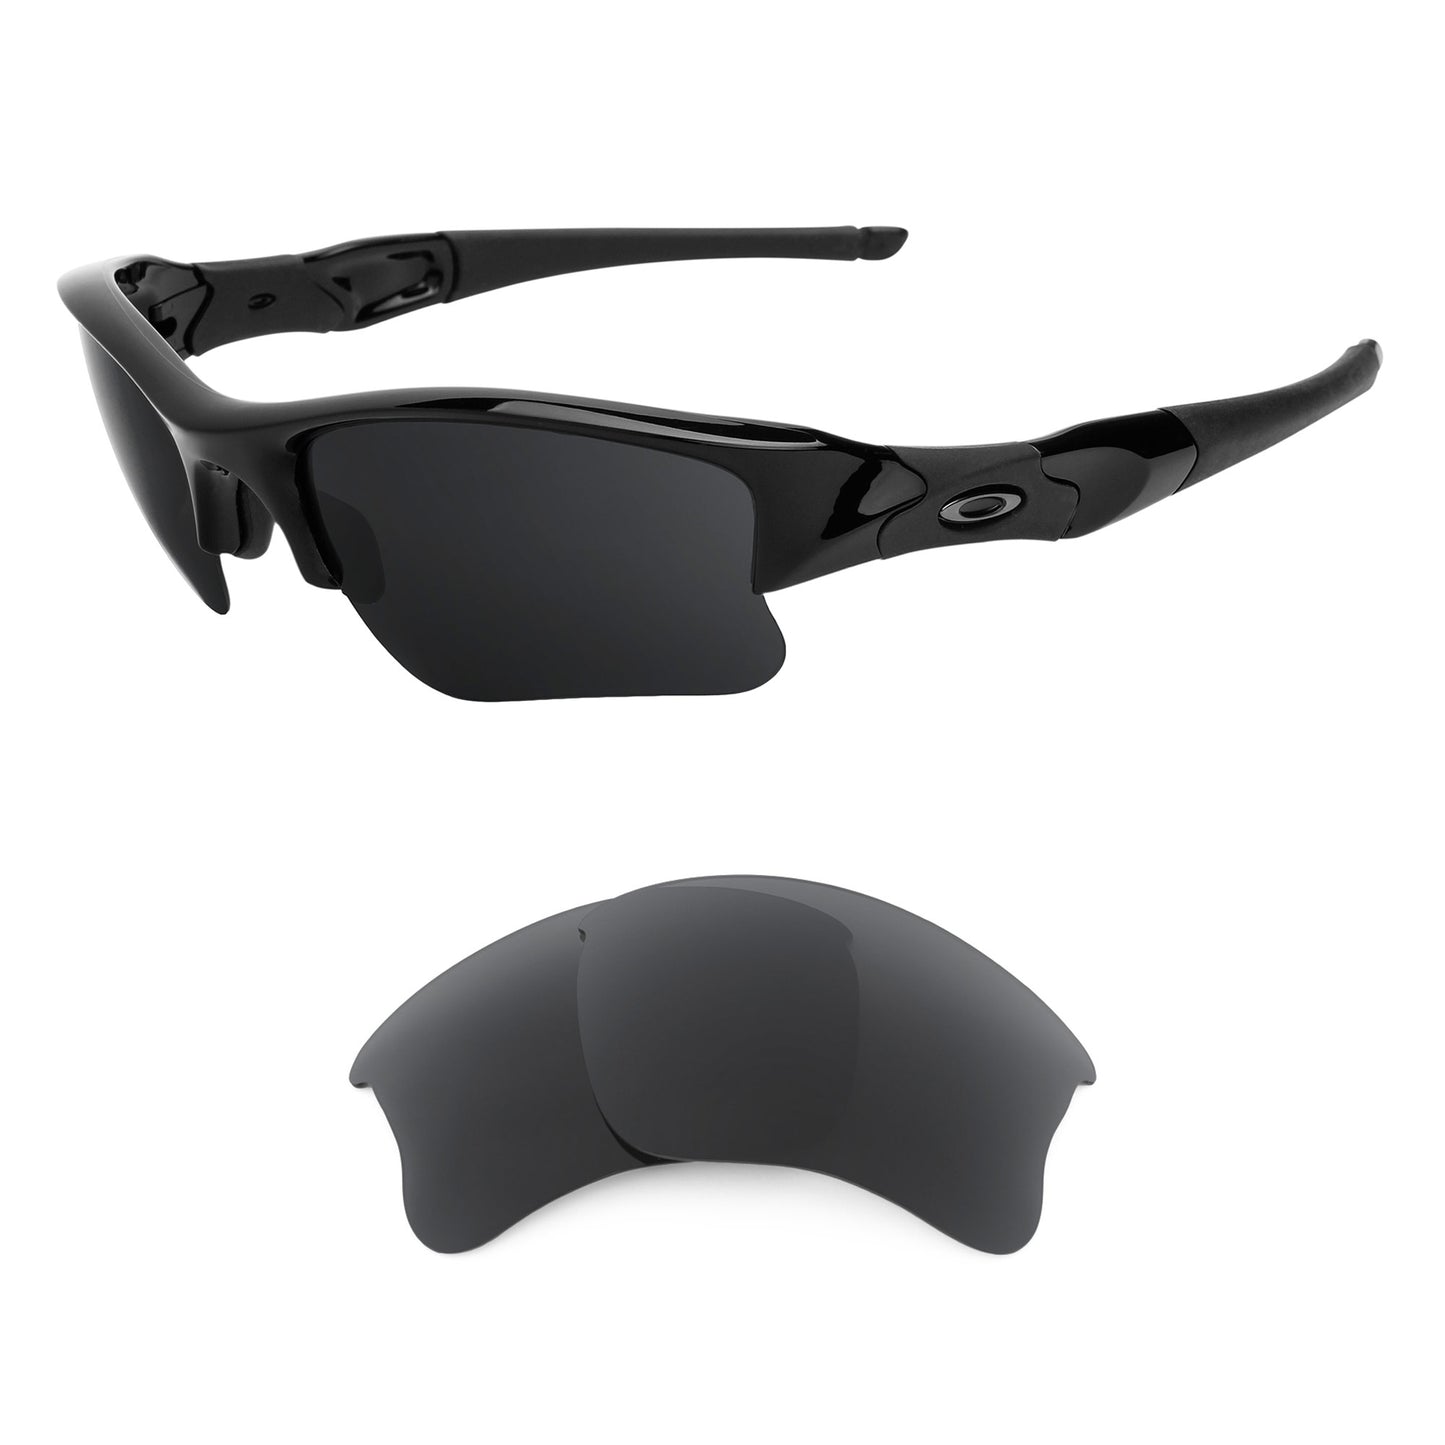 Oakley Flak Jacket XLJ (Low Bridge Fit) sunglasses with replacement lenses